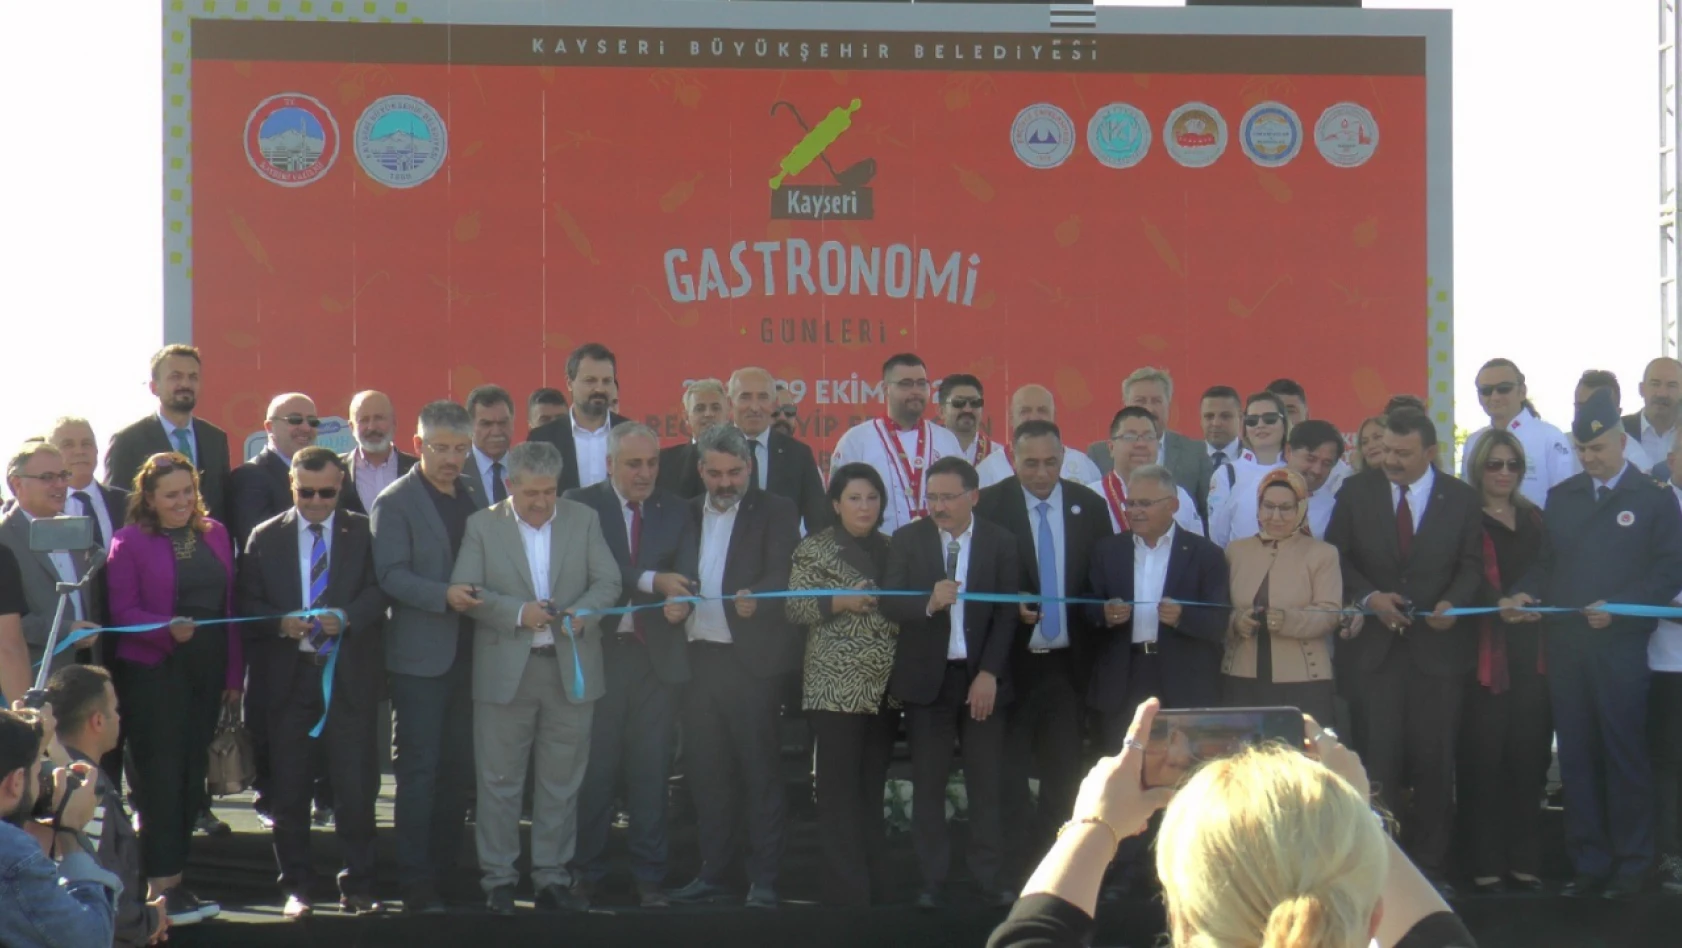 Kayseri'de Gastronomi Günleri başladı!